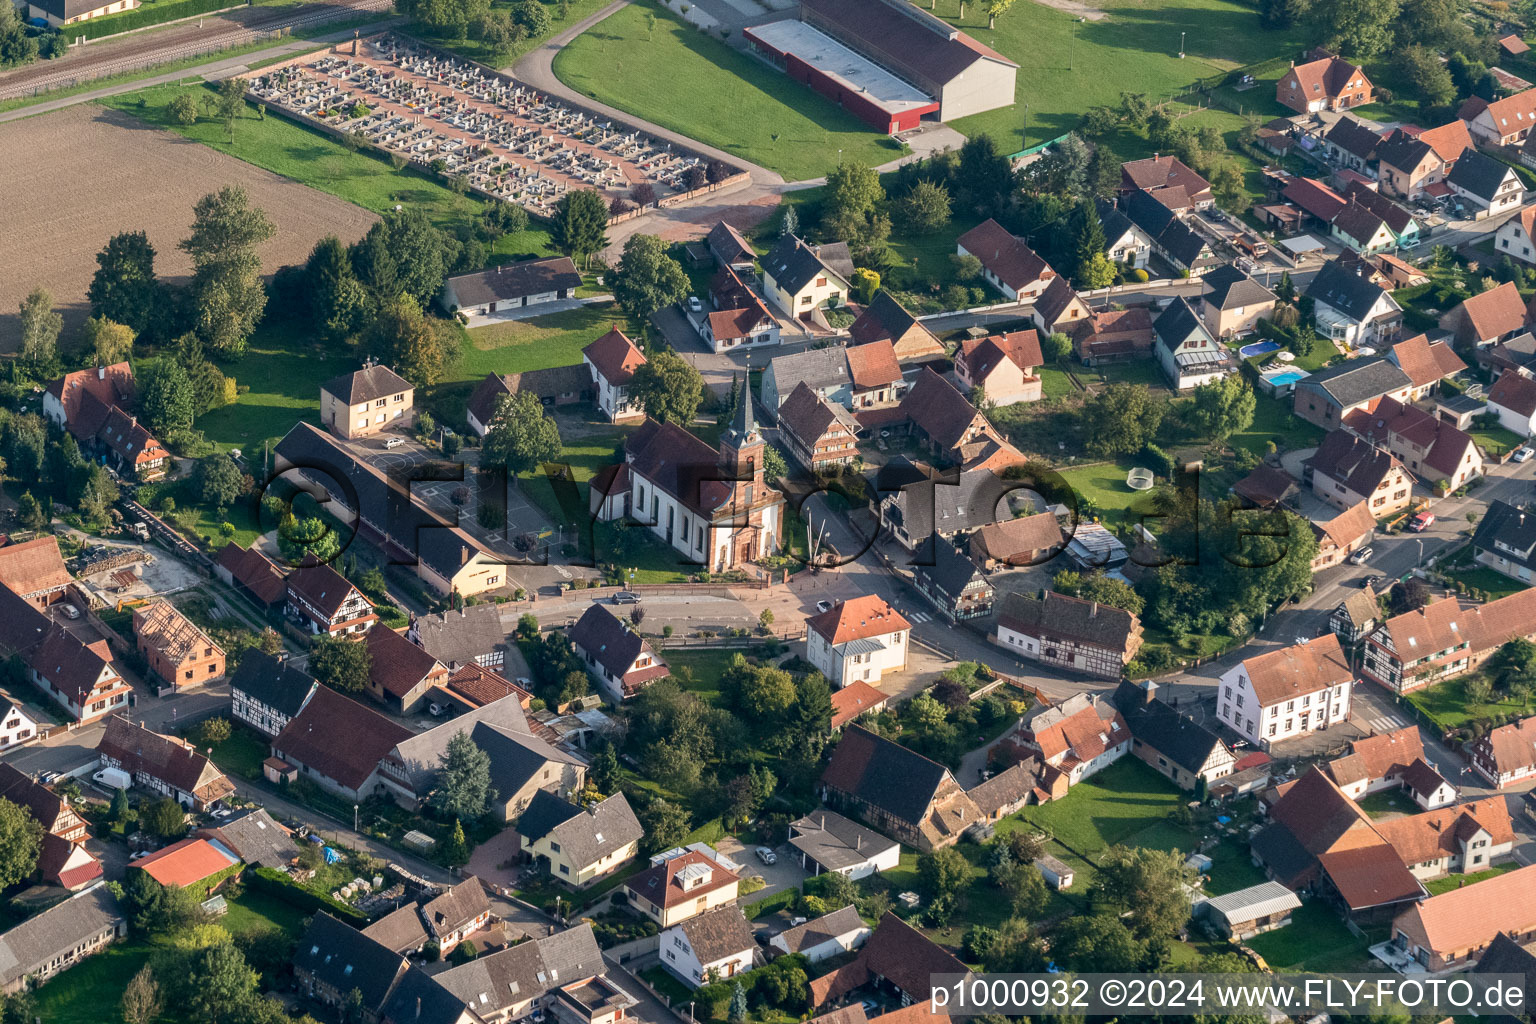 Kirchengebäude der Église protestante in der Dorfmitte in Rountzenheim in Grand Est im Bundesland Bas-Rhin, Frankreich